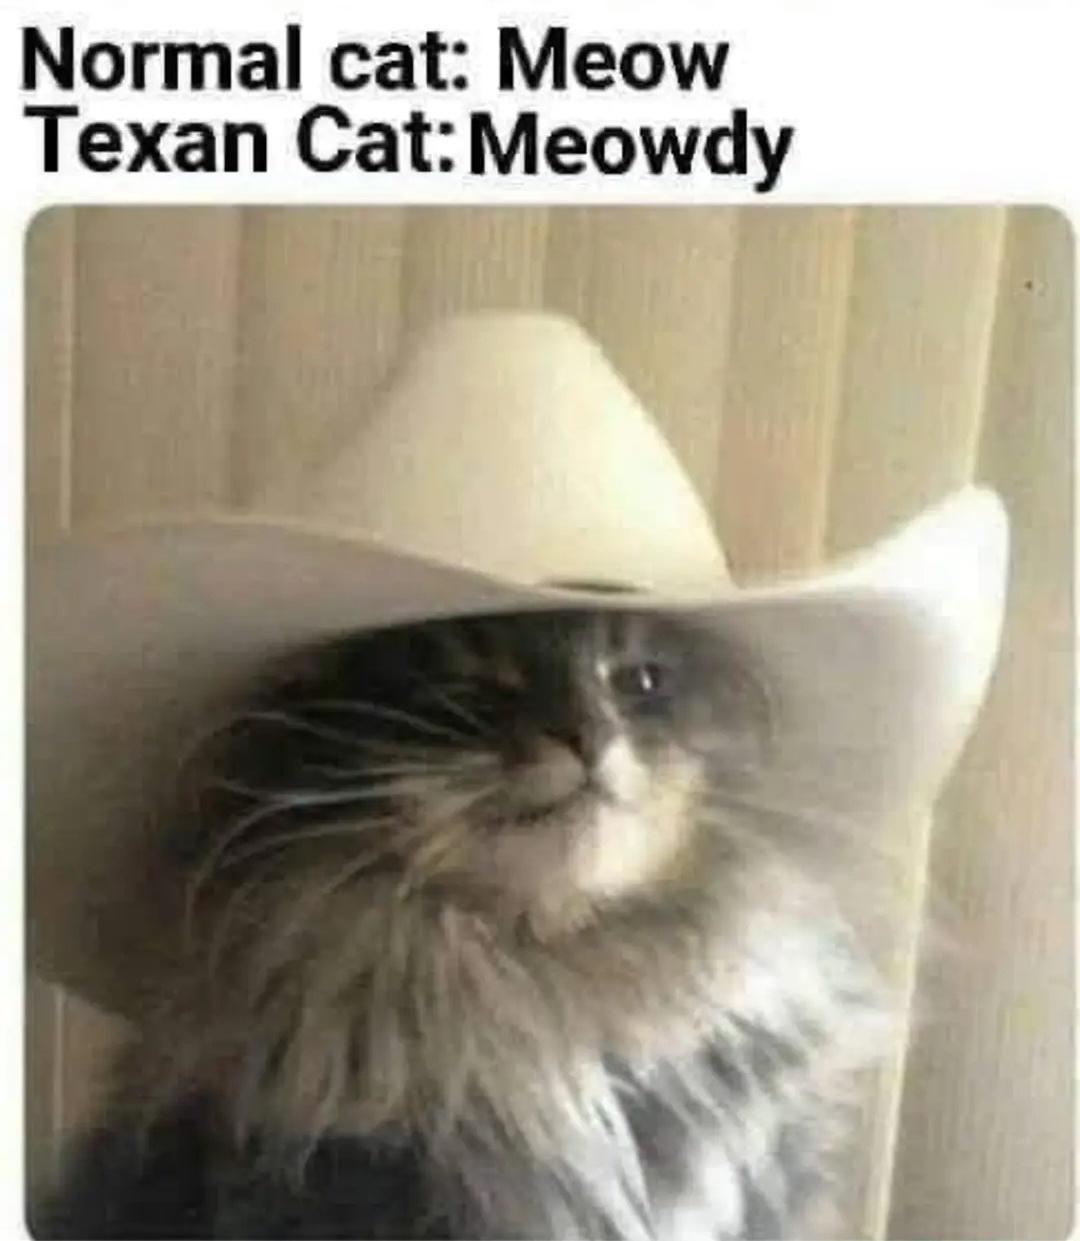 dank memes - normal cat vs texas cat - Normal cat Meow Texan Cat Meowdy